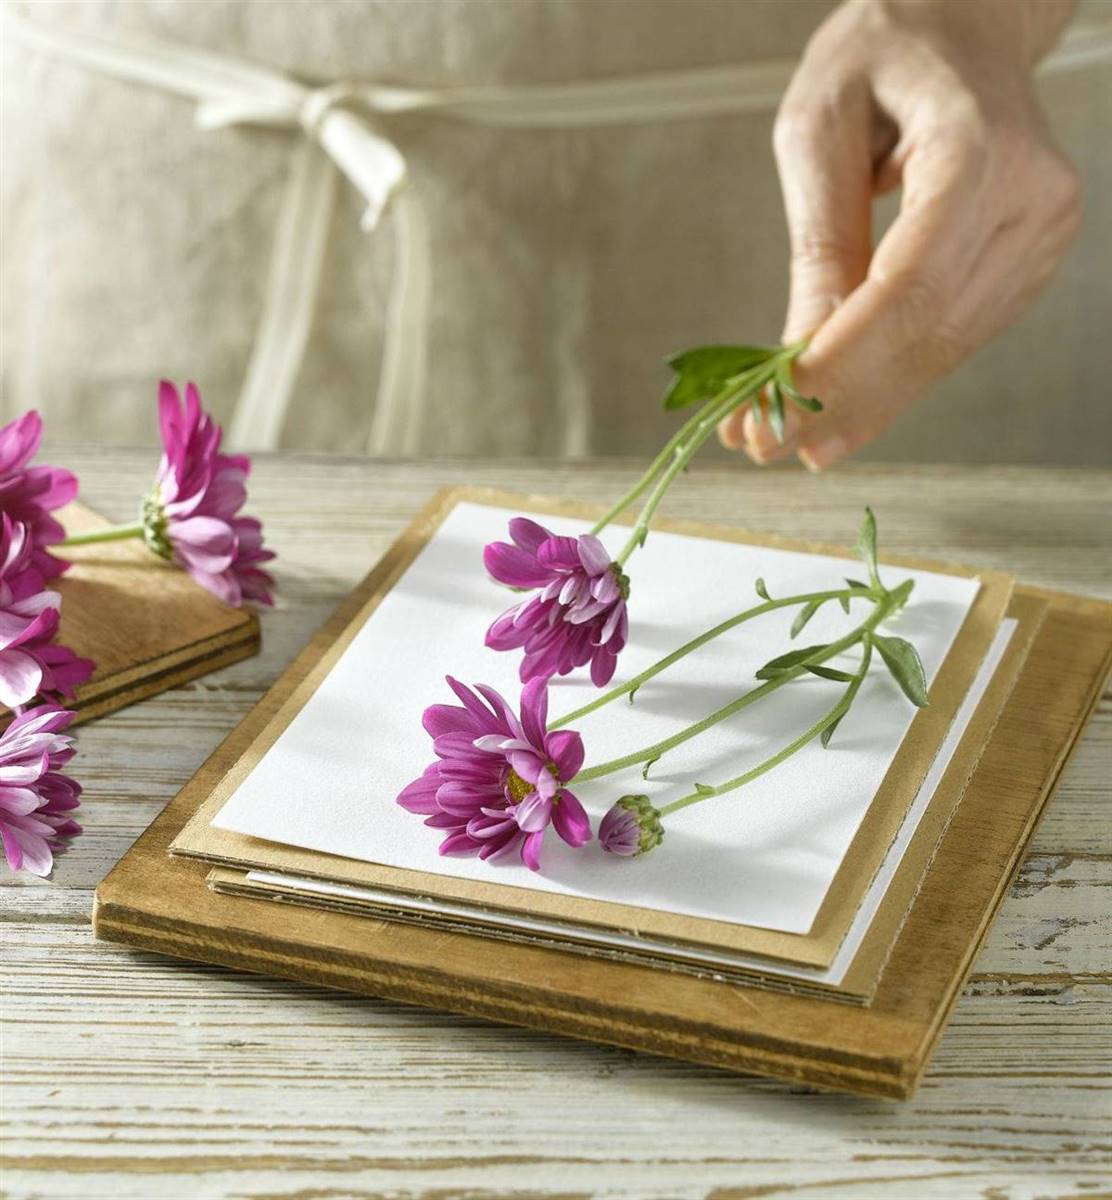 Flores prensadas: cómo prensar tus propias flores para tus proyectos DIY